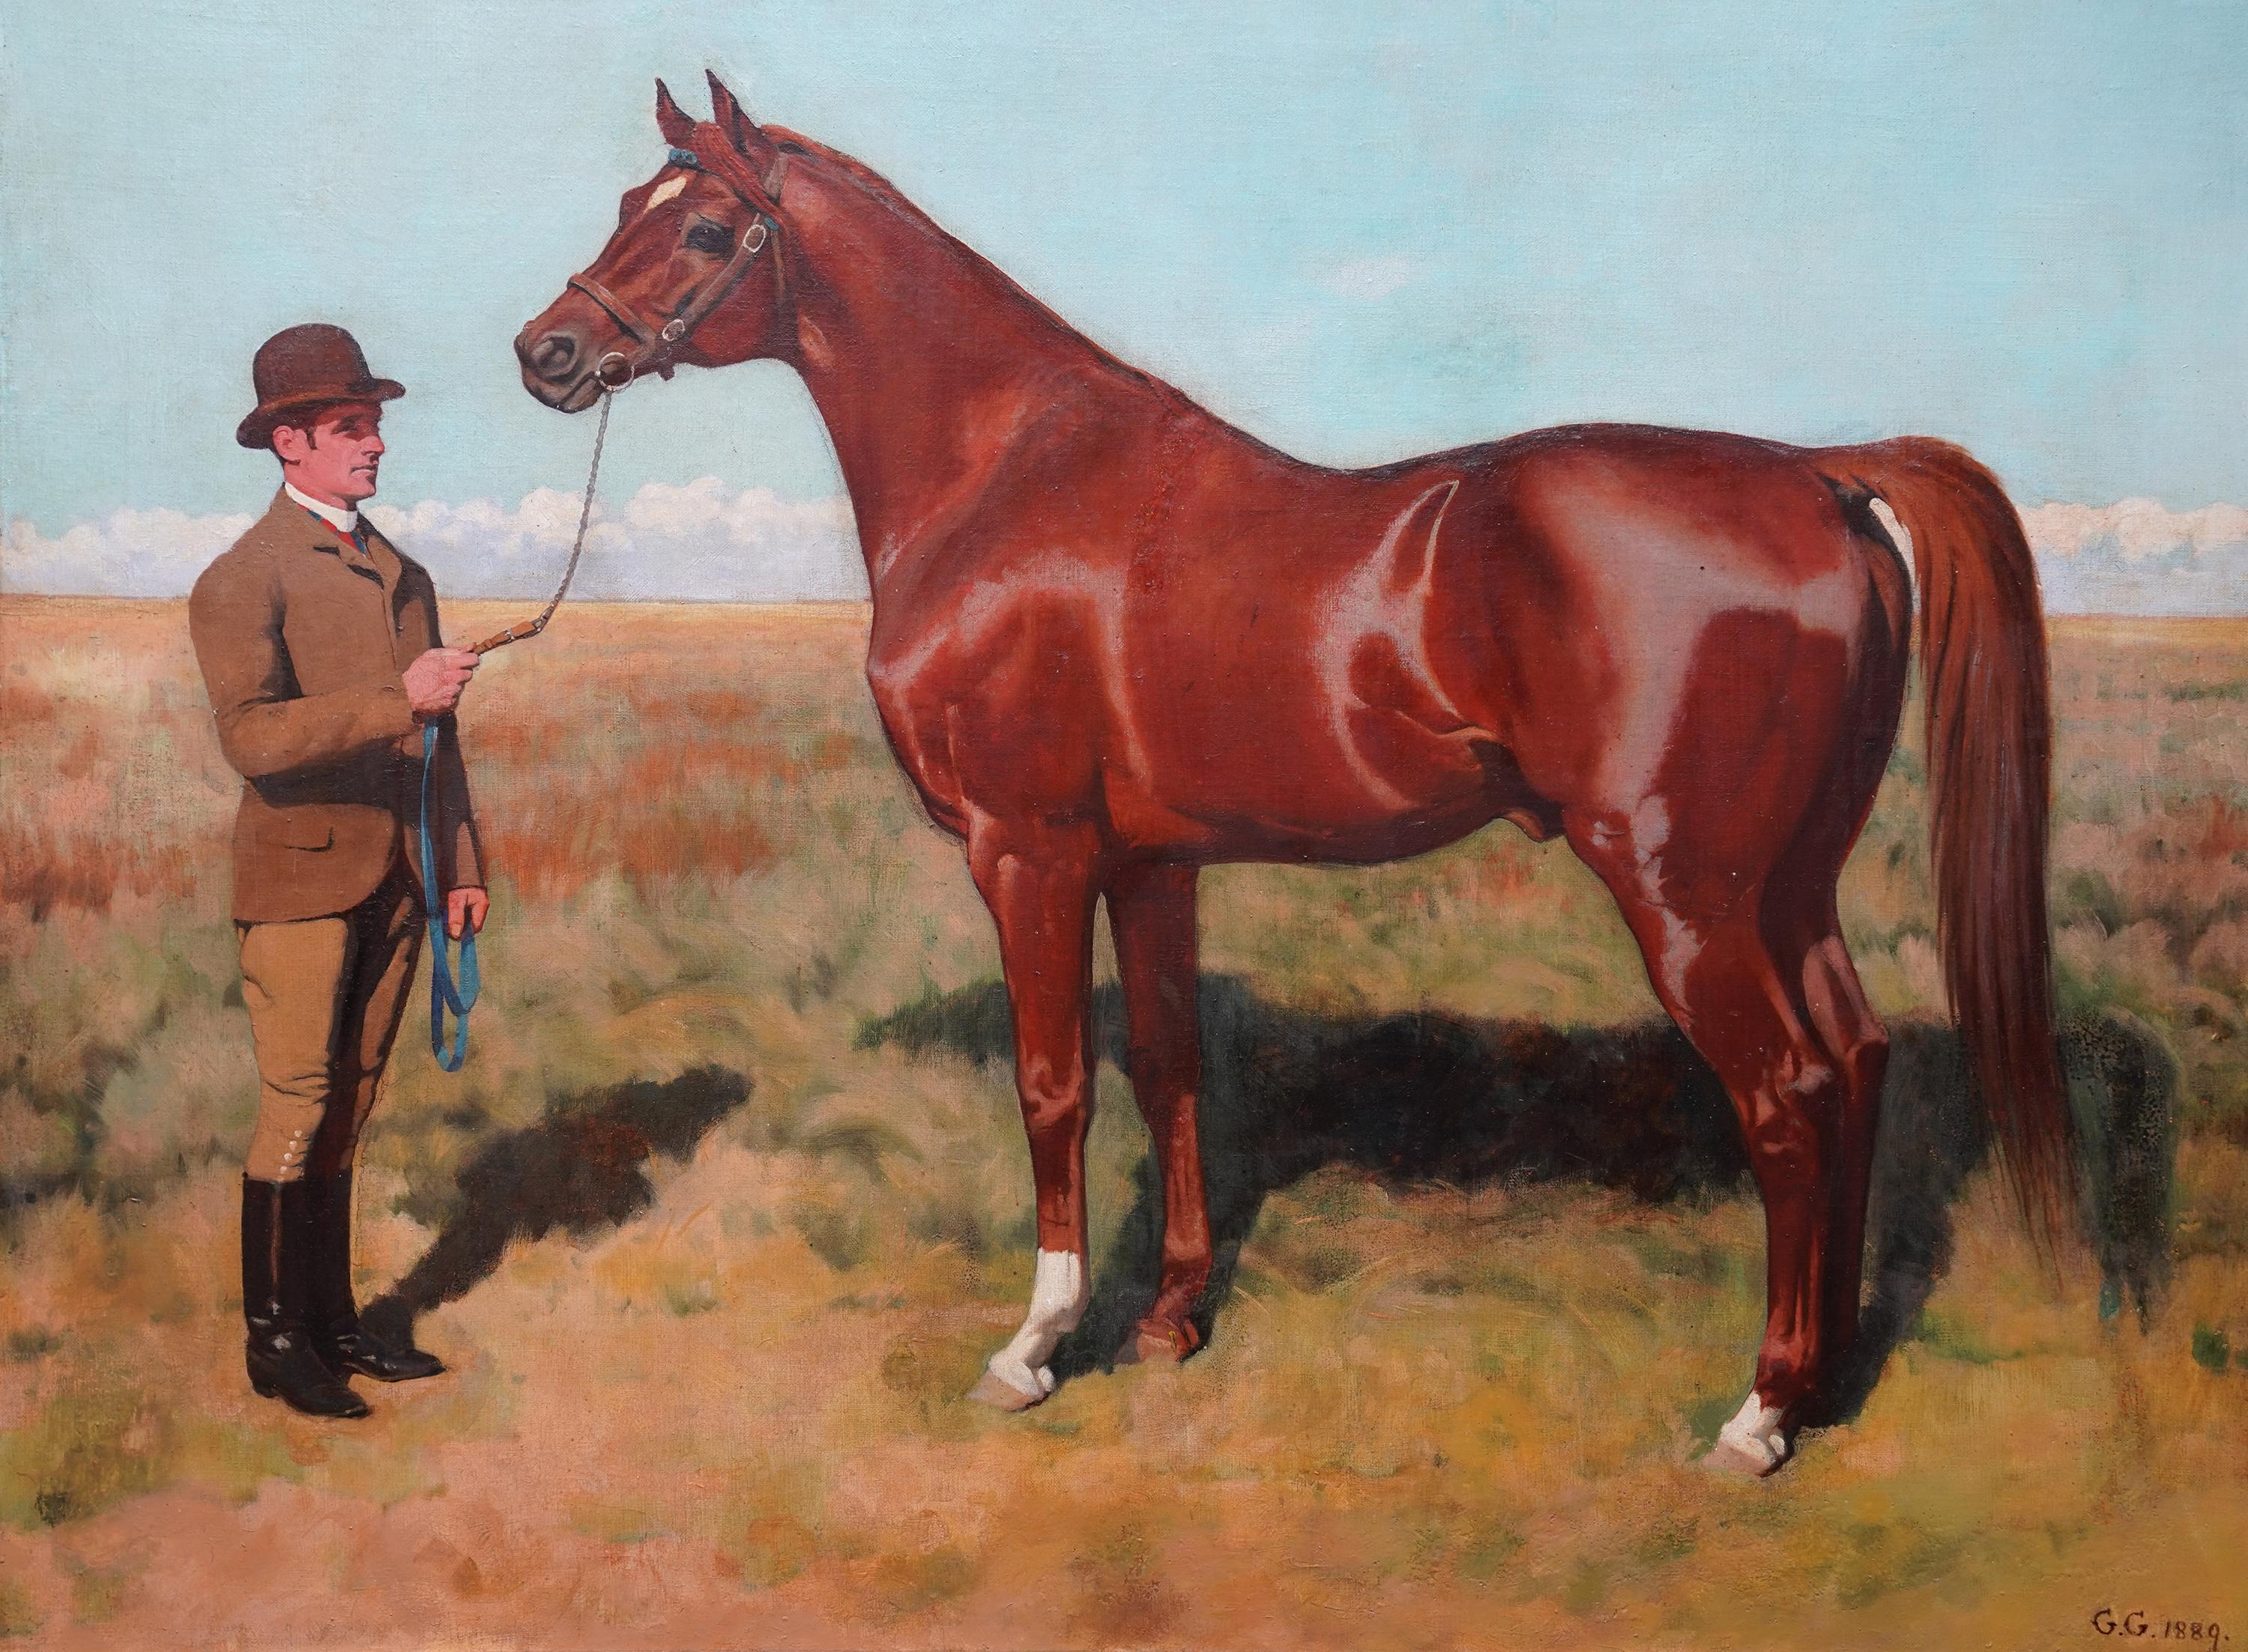 Cheval de course Phoenix avec Guilermo Kemmis - peinture à l'huile britannique du 19e siècle - Painting de George Gascoyne